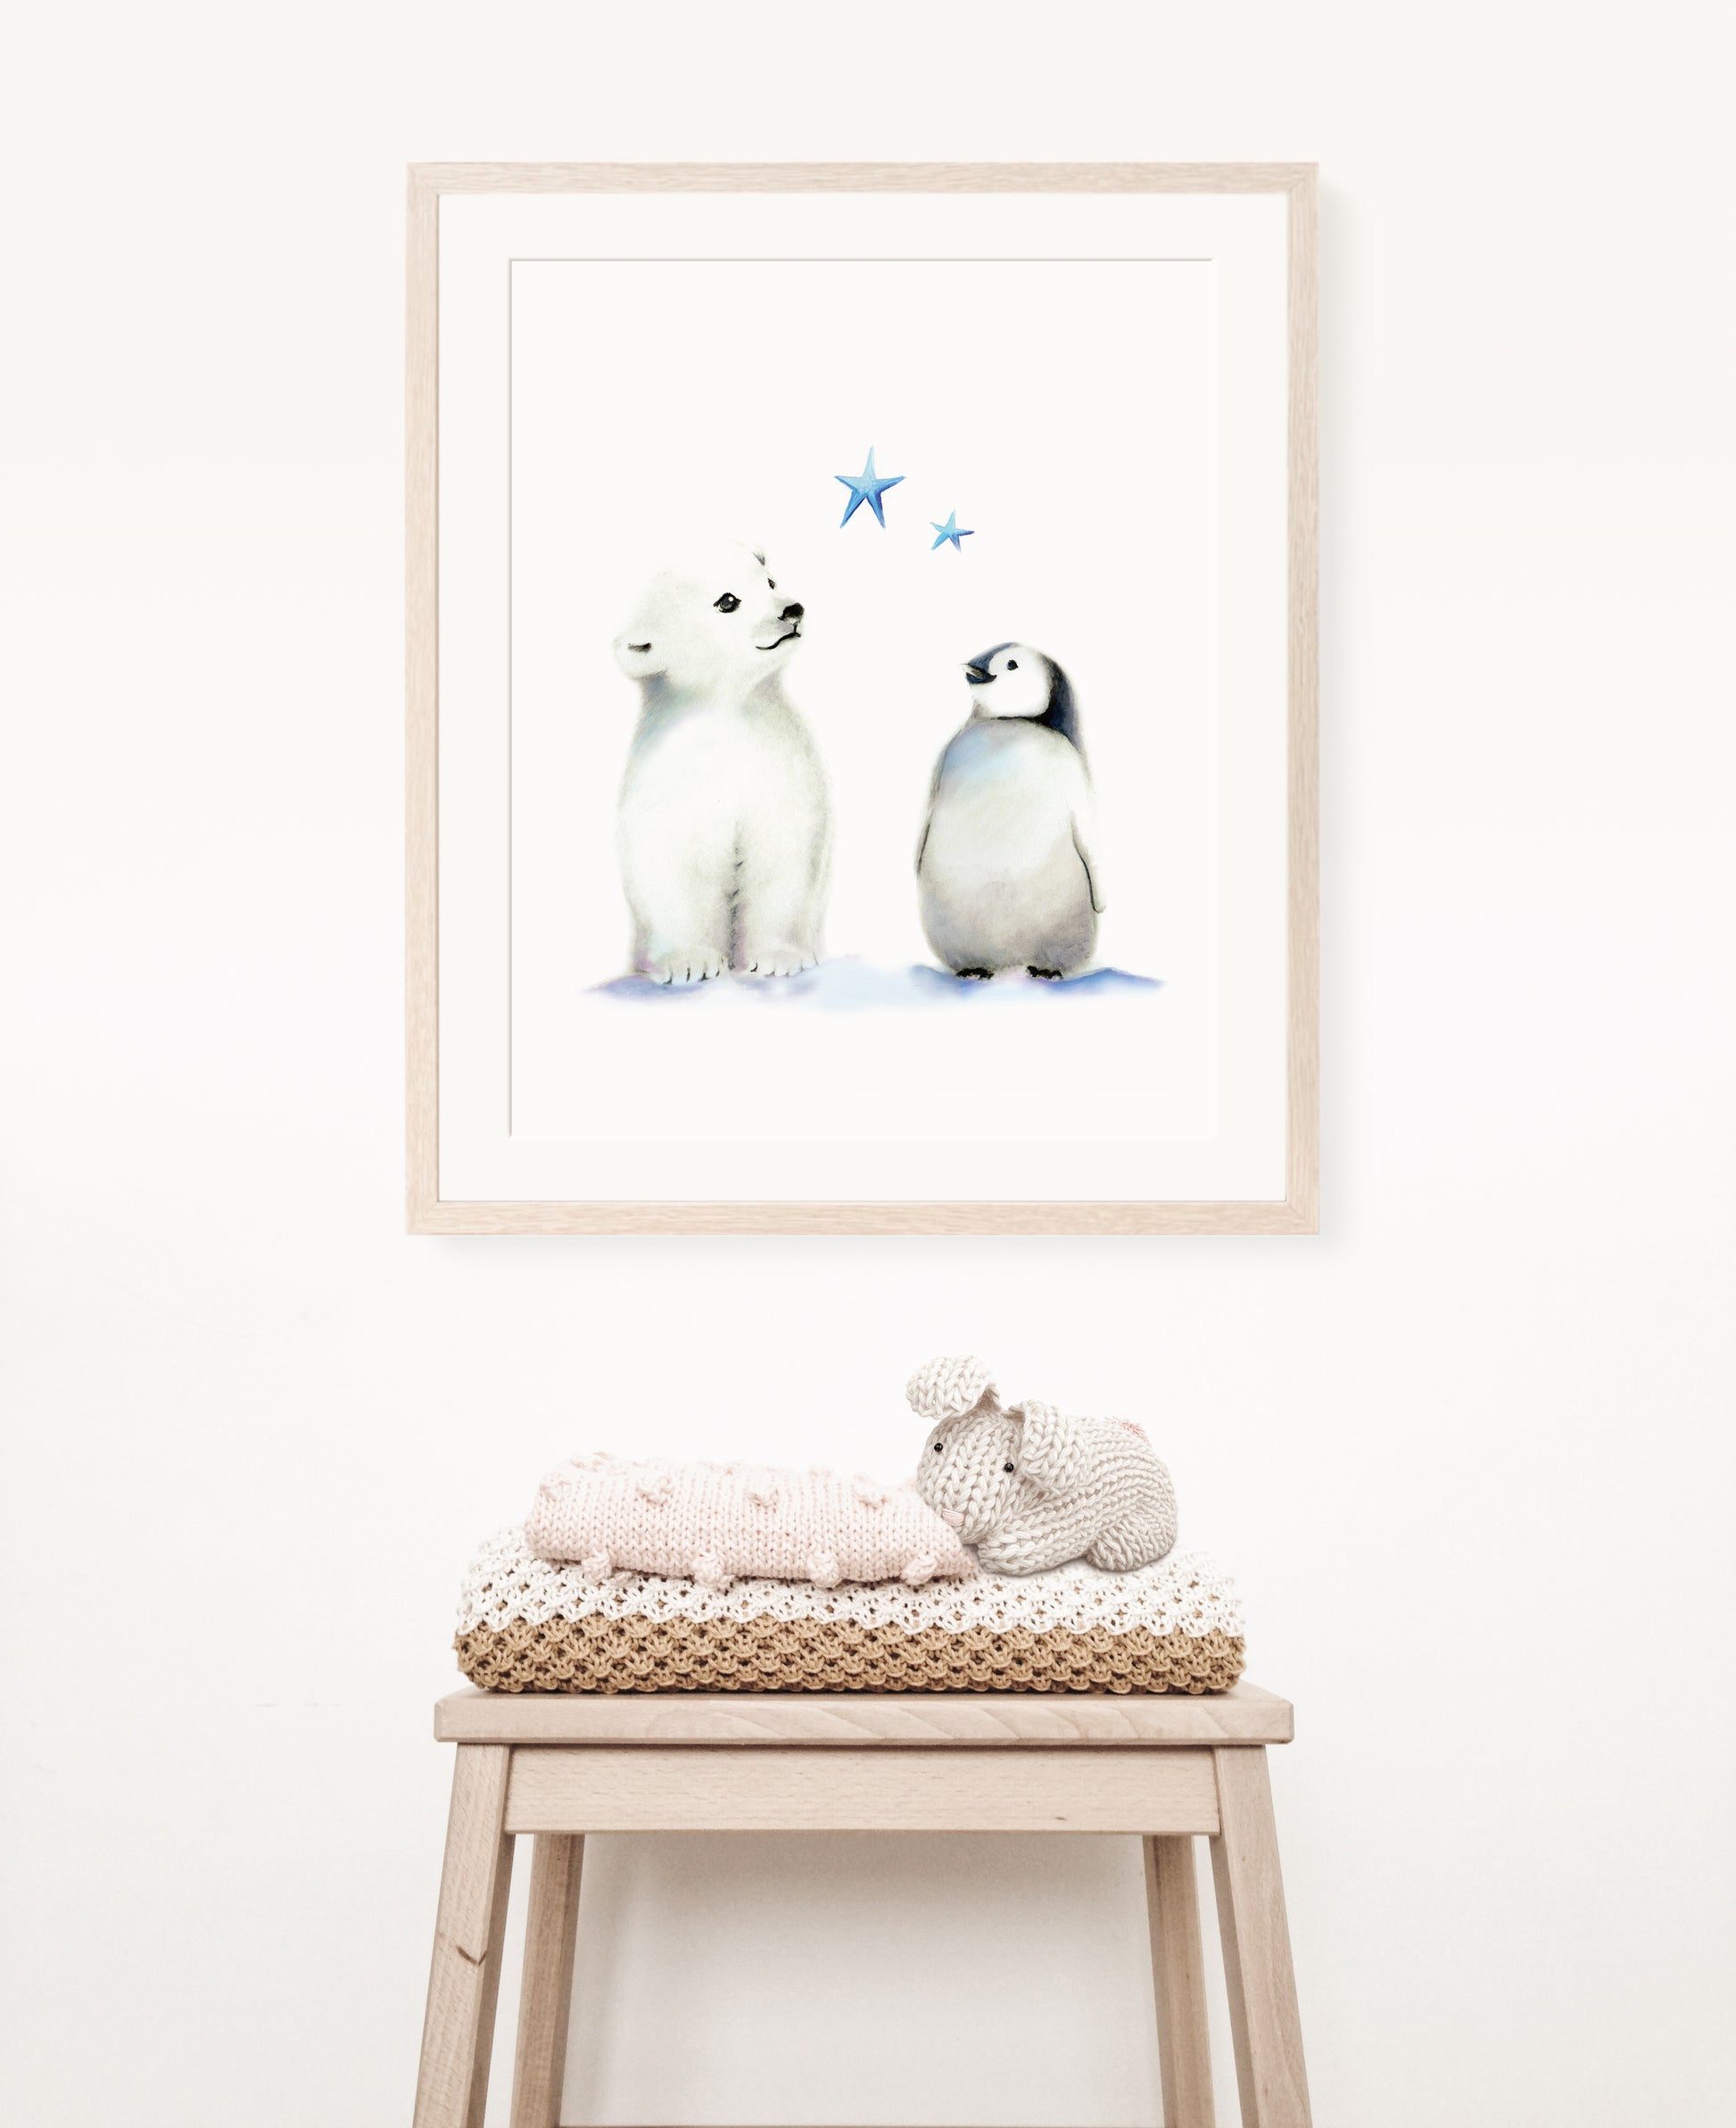 Polar Bear and Penguin Nursery Art Print - Studio Q - Art by Nicky Quartermaine ScottPolar Bear and Penguin Nursery Art Print - Studio Q - Art by Nicky Quartermaine Scott